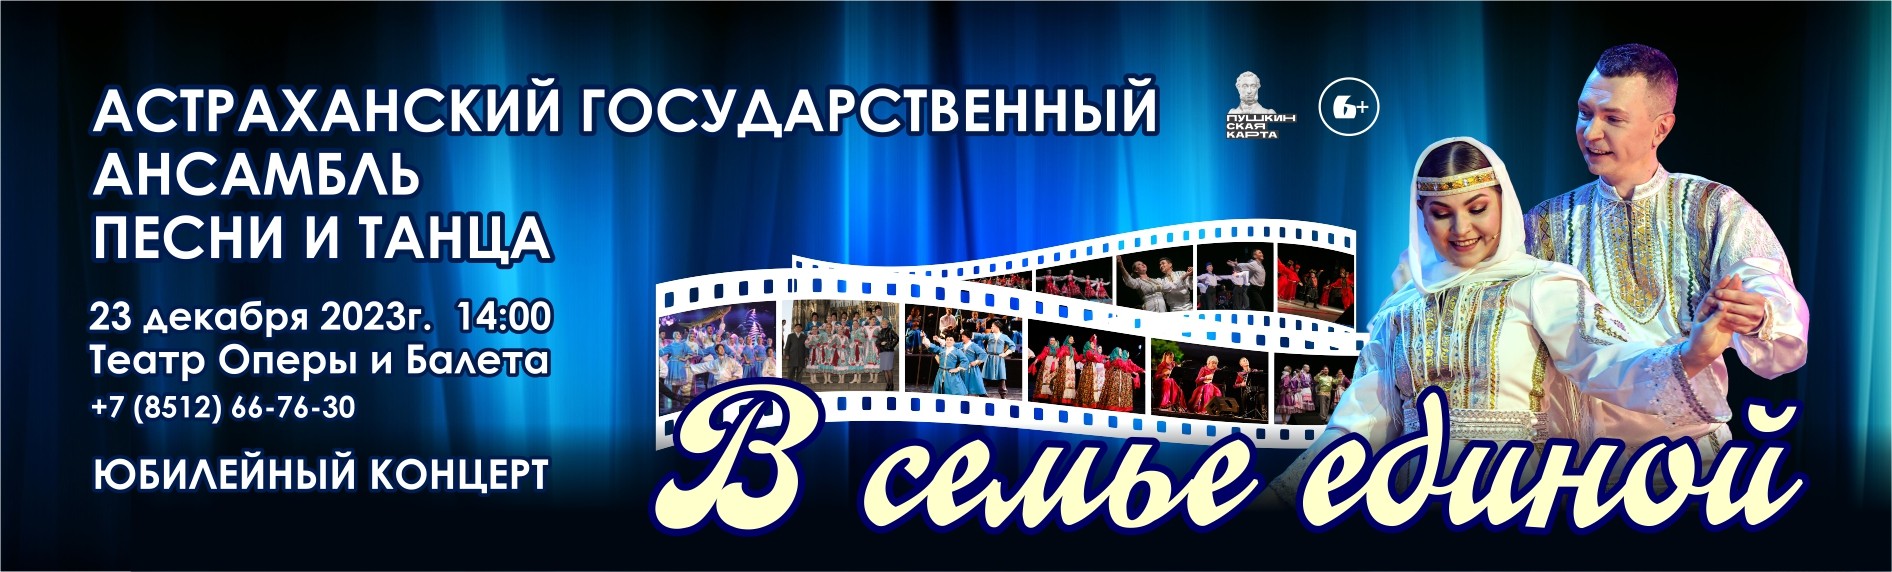 Концерт Астраханского государственного ансамбля песни и танца "В семье единой"